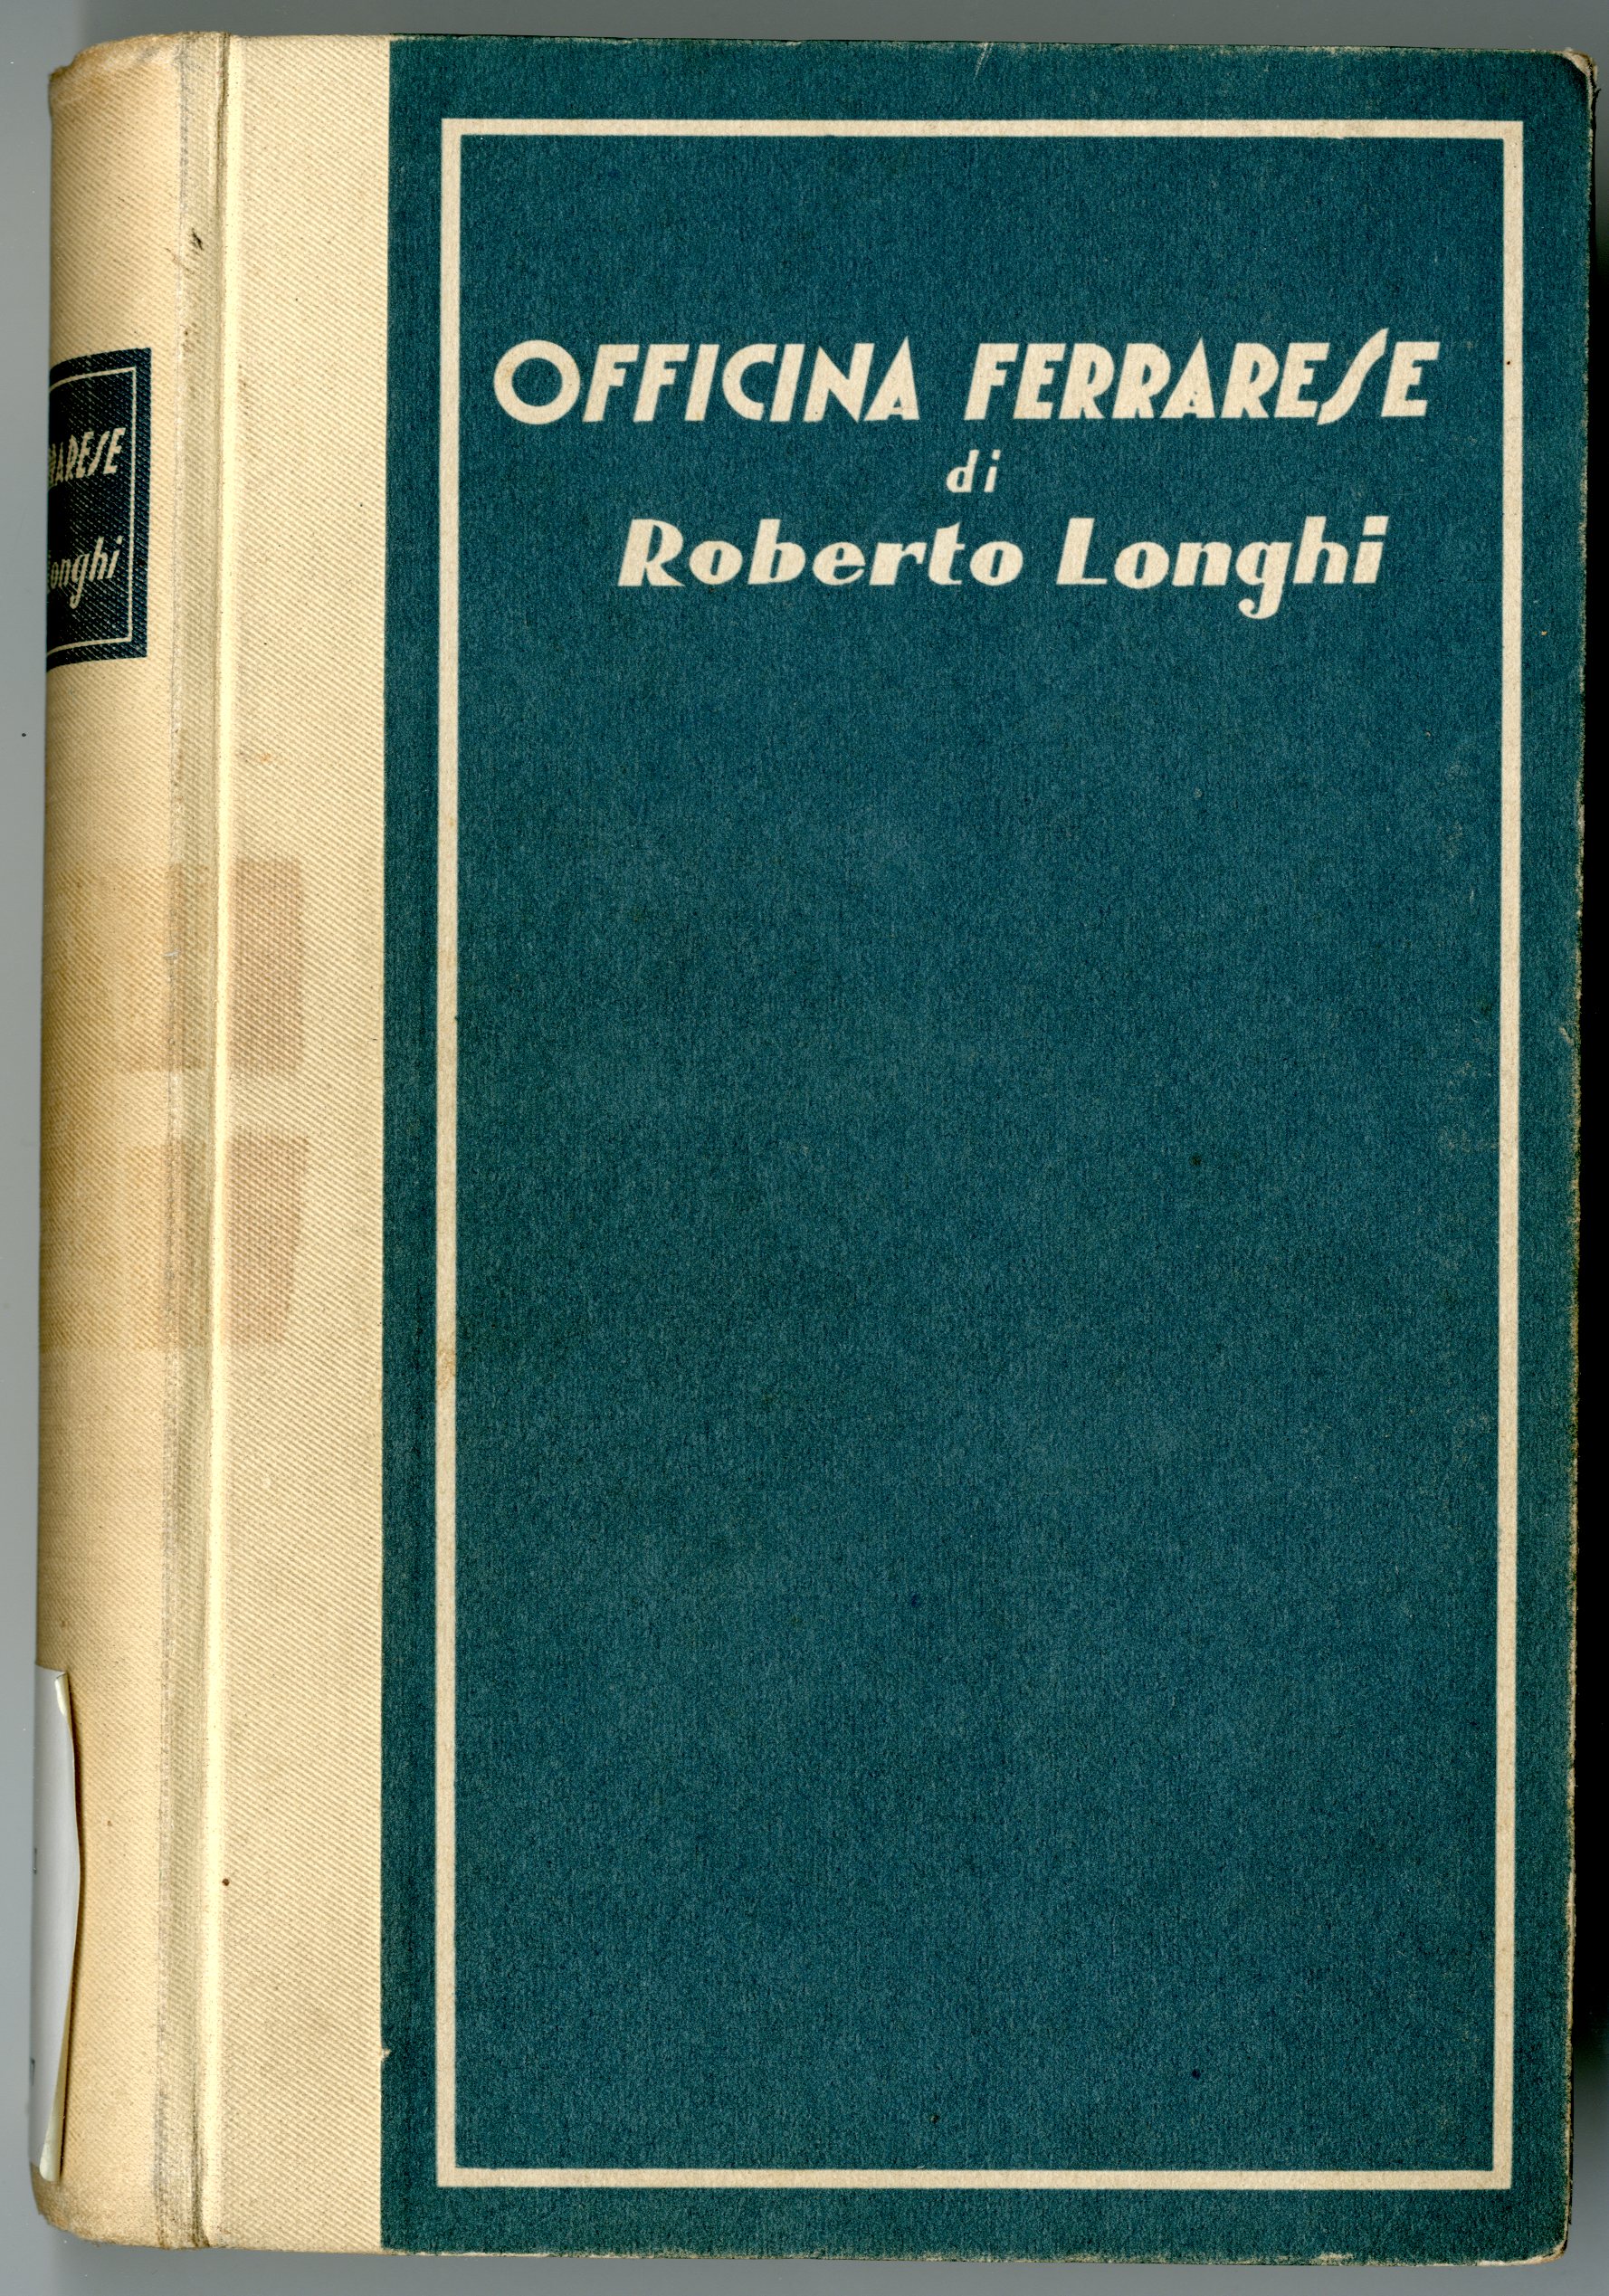 Roberto Longhi, Officina ferrarese, Roma, Le edizioni d’Italia, 1934